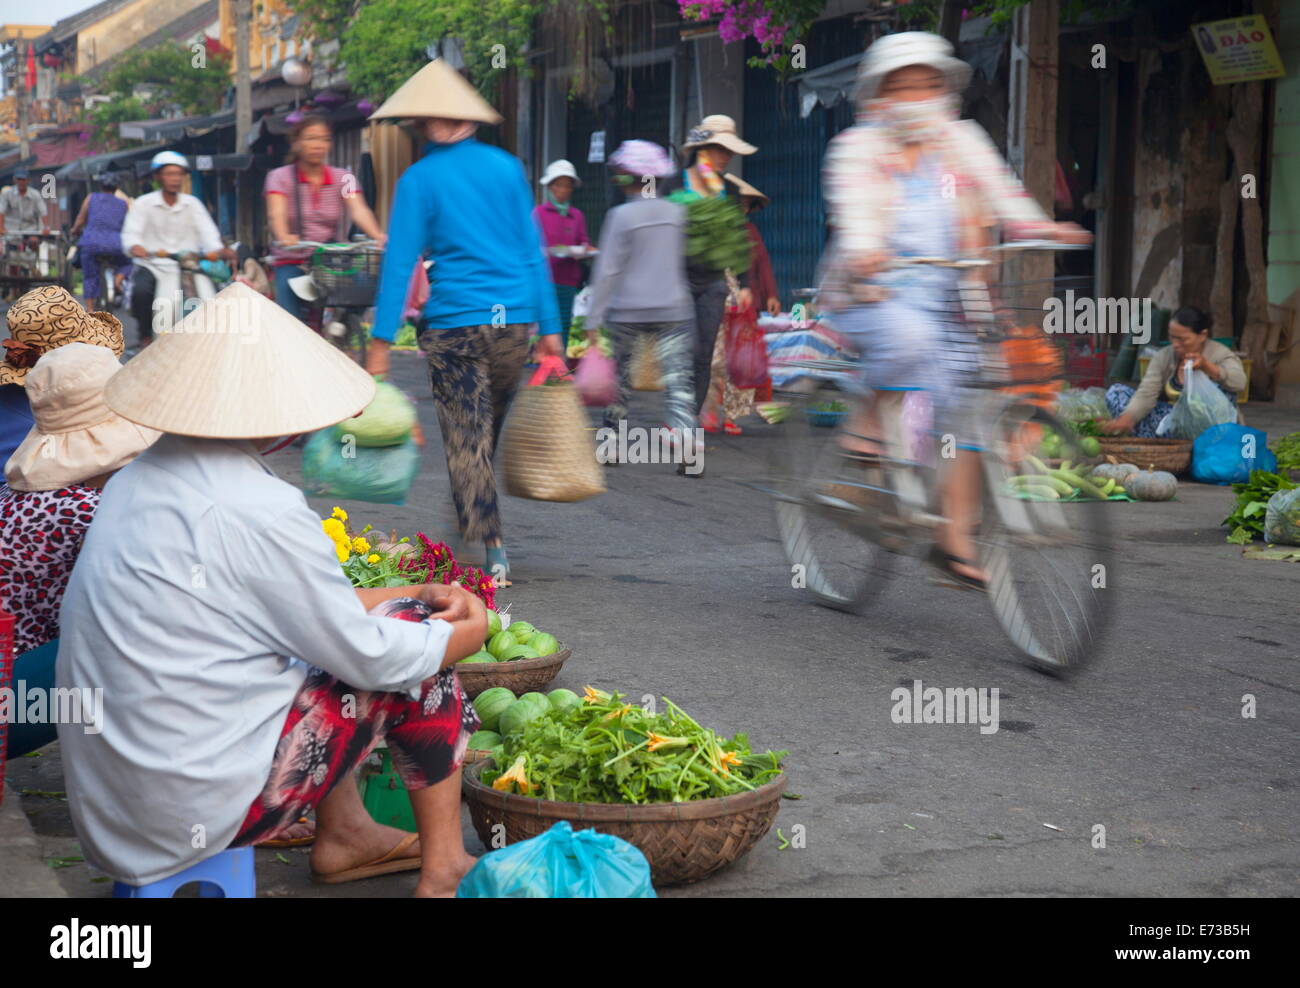 Donne rivenditori di verdura al mercato, Hoi An, sito UNESCO, Quang Nam, Vietnam, Indocina, Asia sud-orientale, Asia Foto Stock